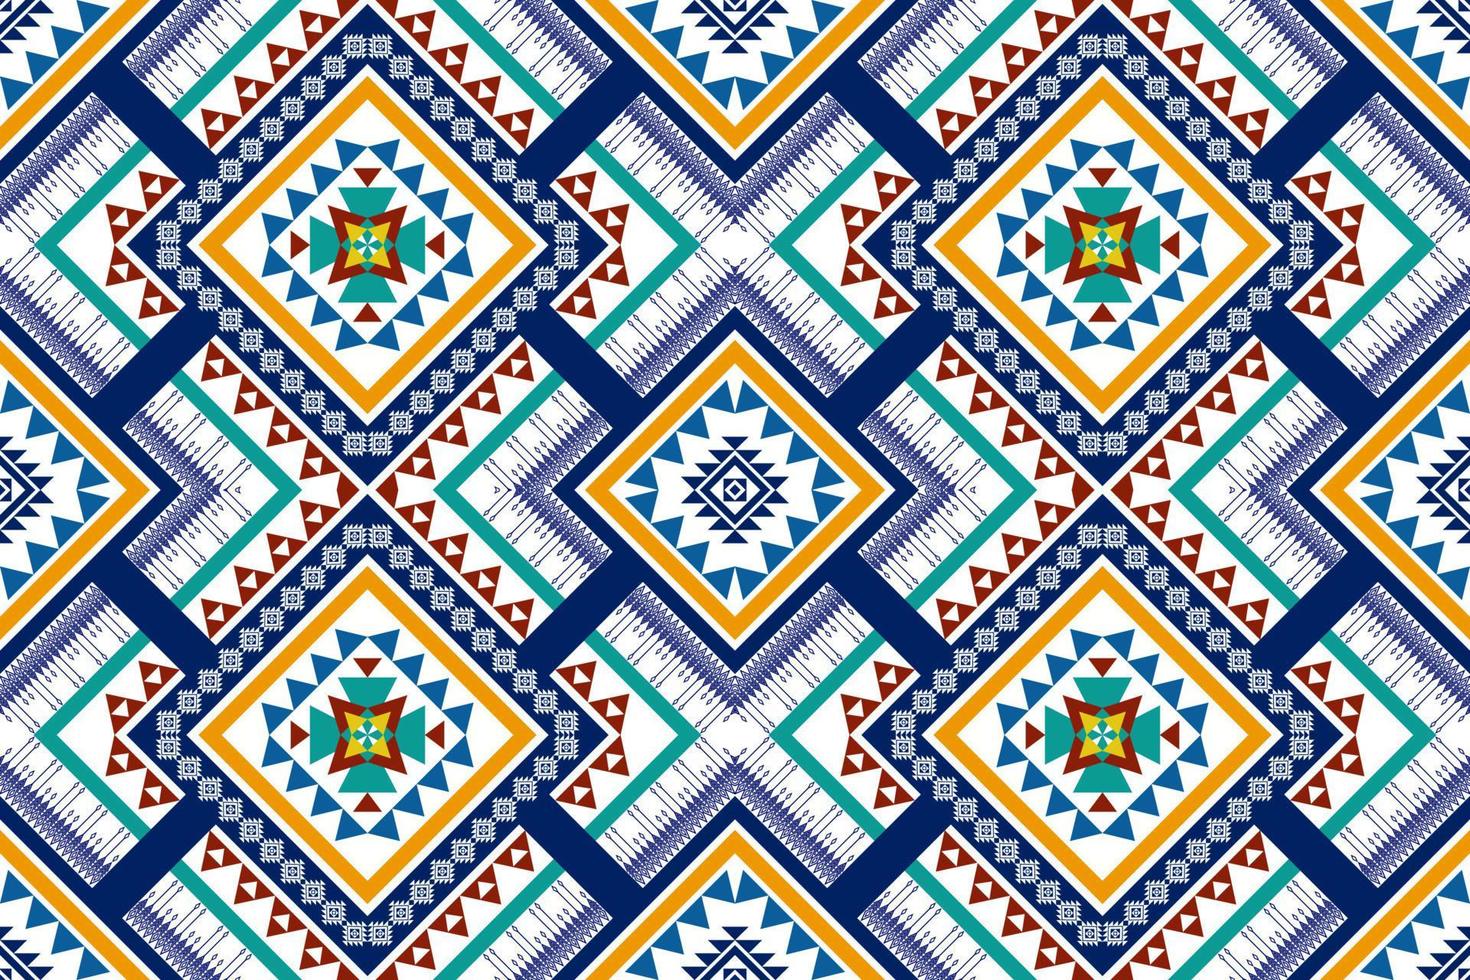 geometrisch etnisch patroonontwerp. Azteekse stof tapijt mandala ornament chevron textiel decoratie behang. tribal turkije afrikaanse indische traditionele borduurachtergrond vector